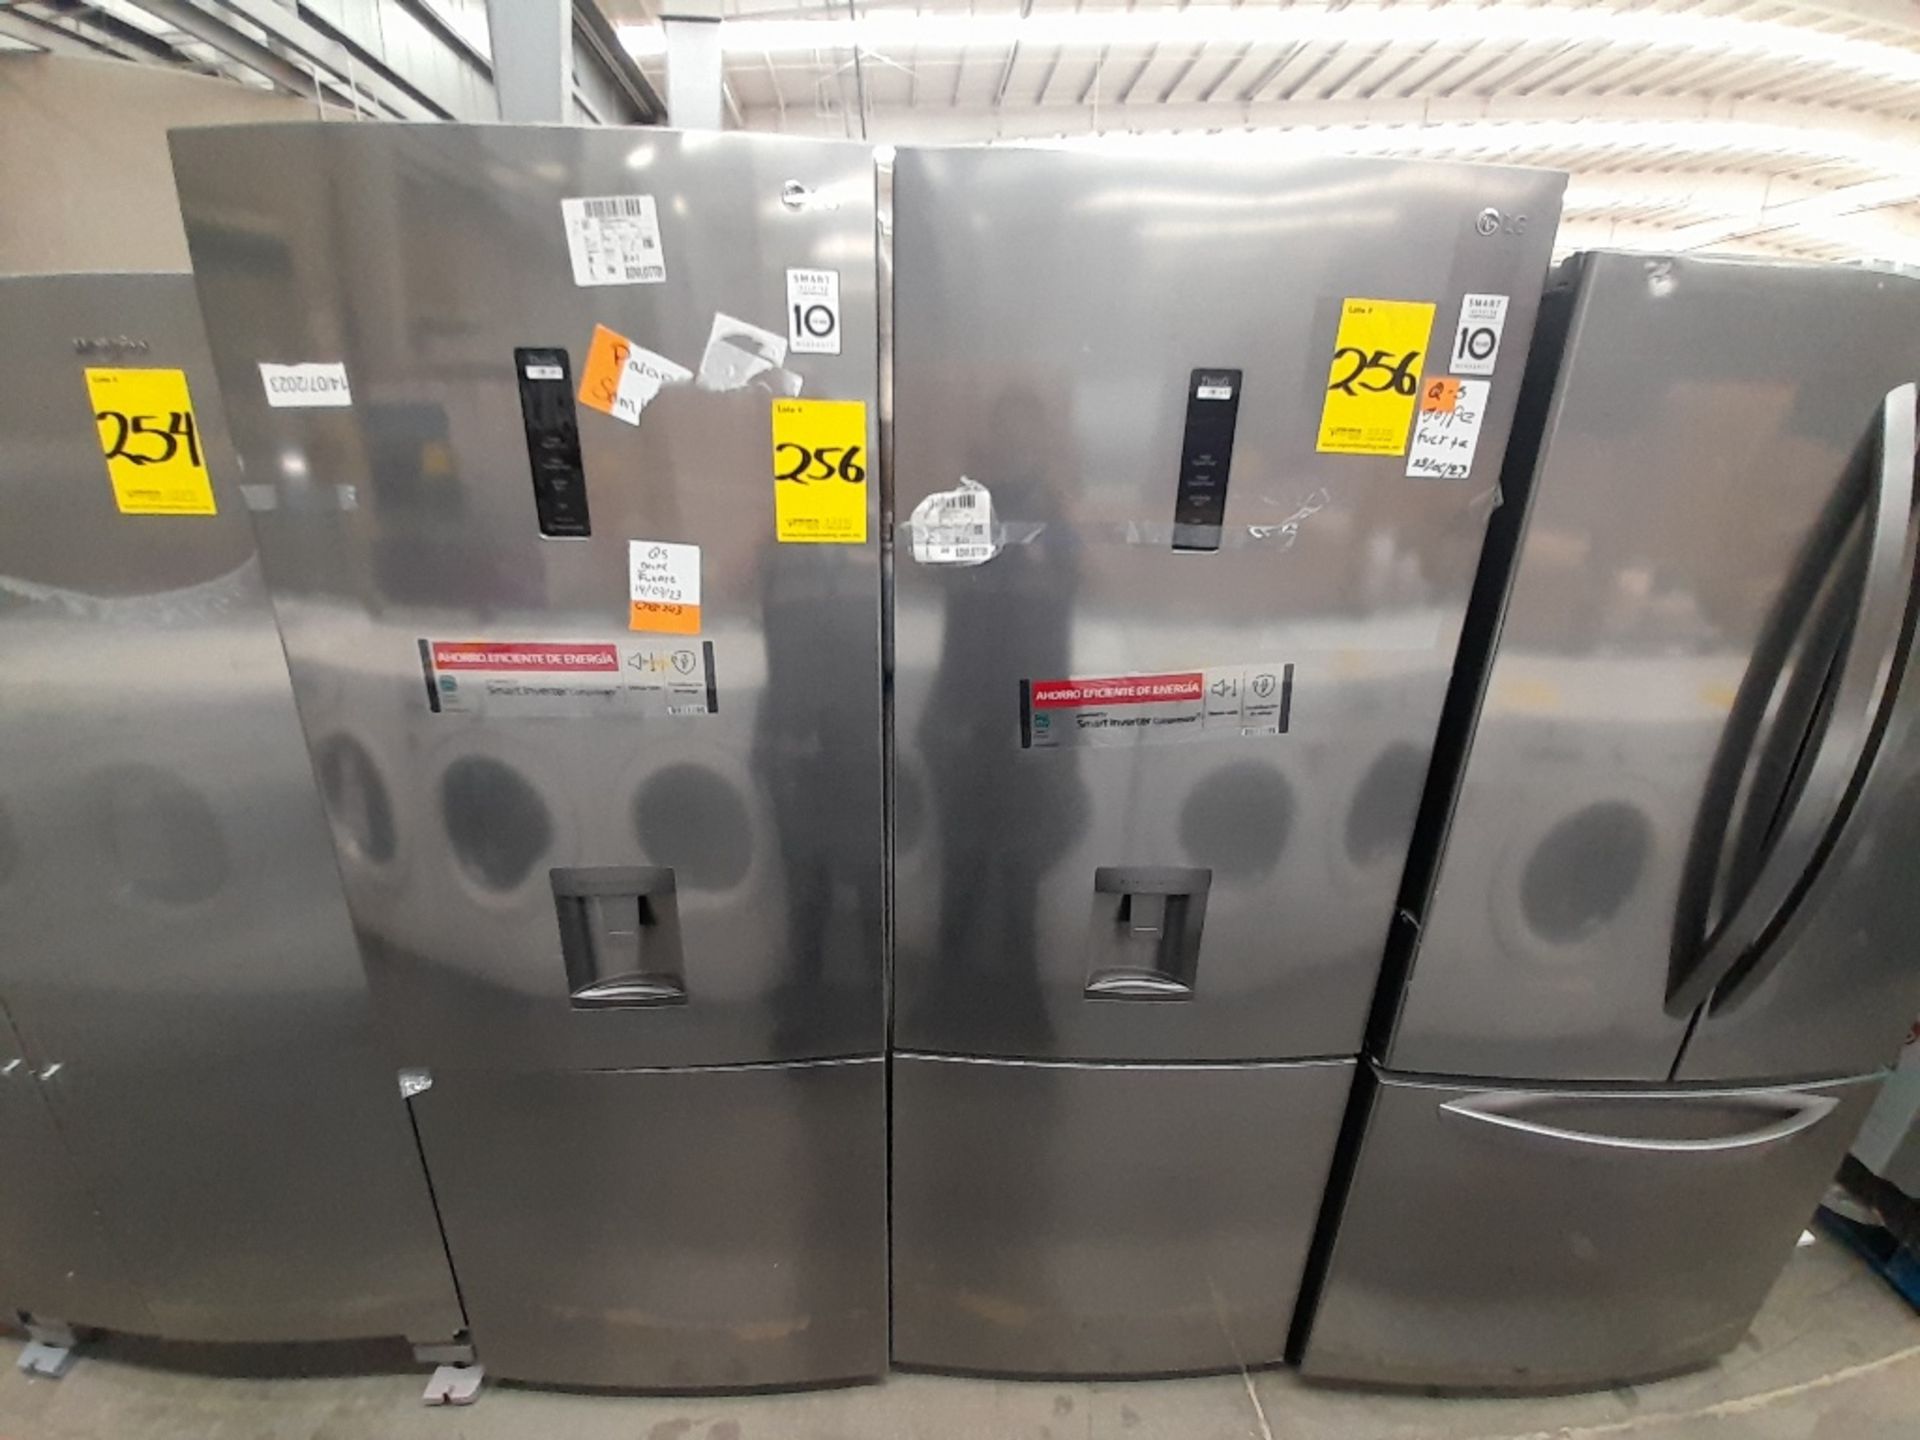 Lote de 2 refrigeradores contiene: 1 refrigerador con dispensador de agua Marca LG, Modelo GB45SPP,